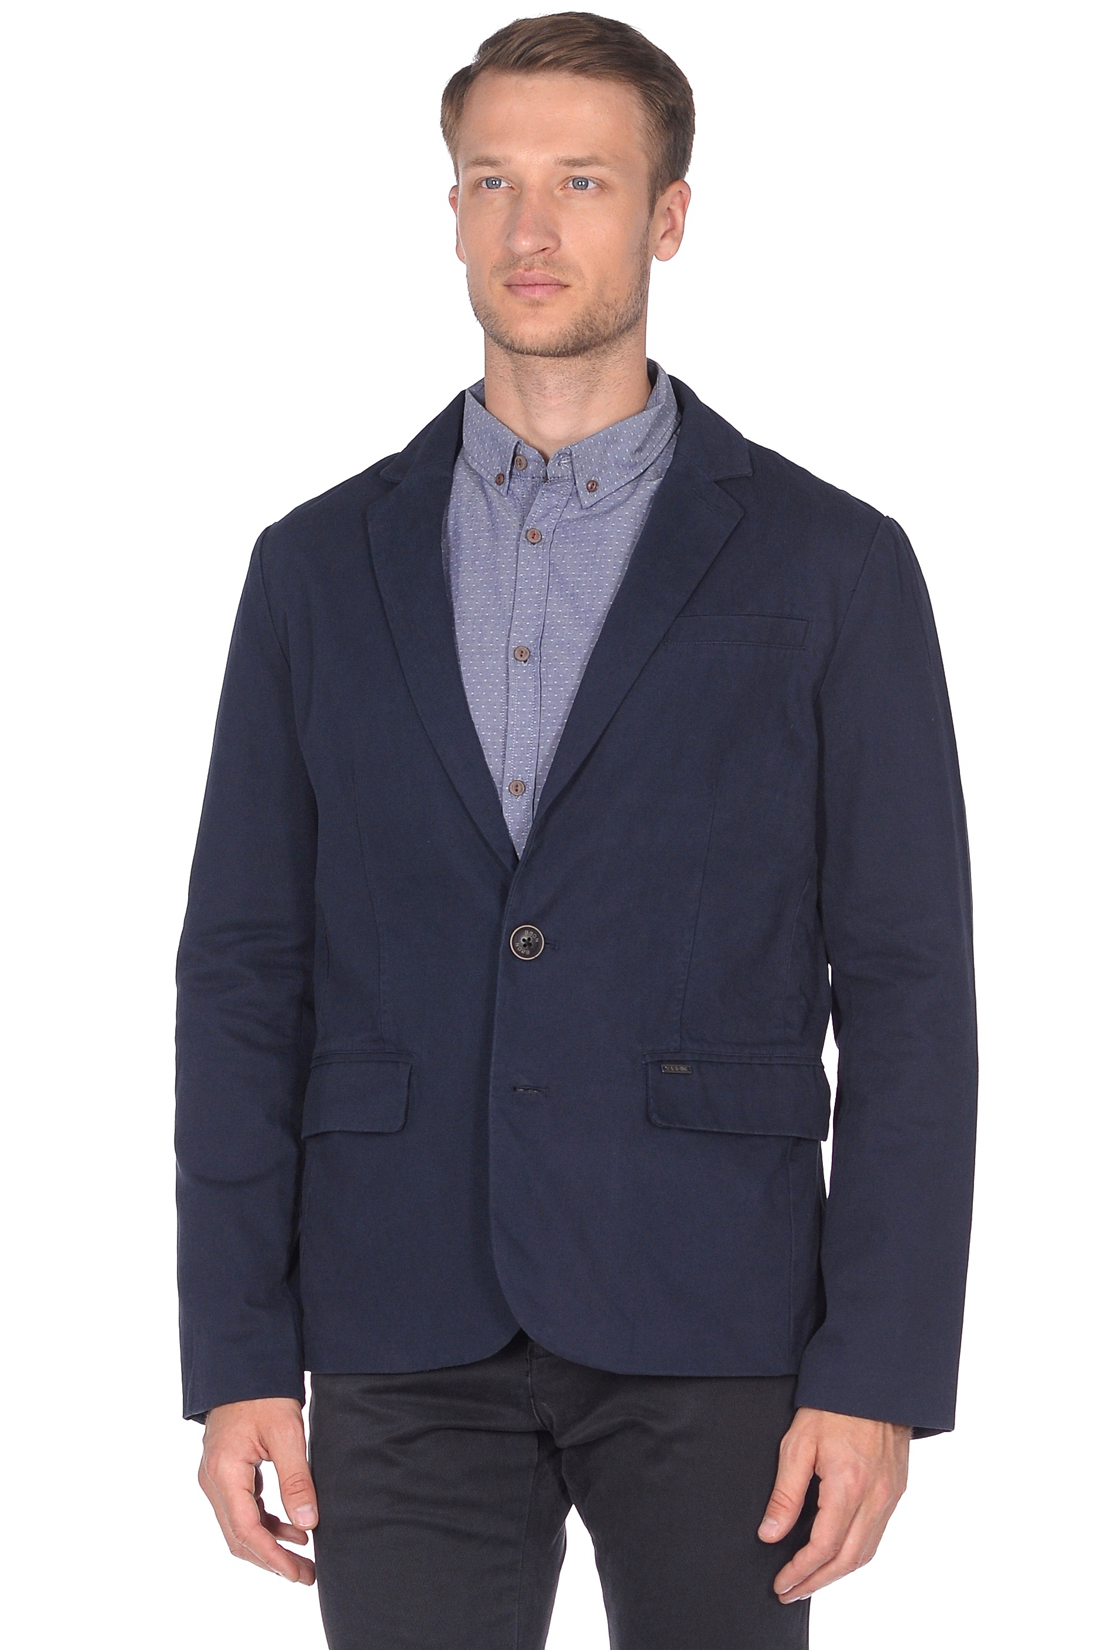 Повседневный пиджак из хлопка (арт. baon B628501), размер XXL, цвет синий